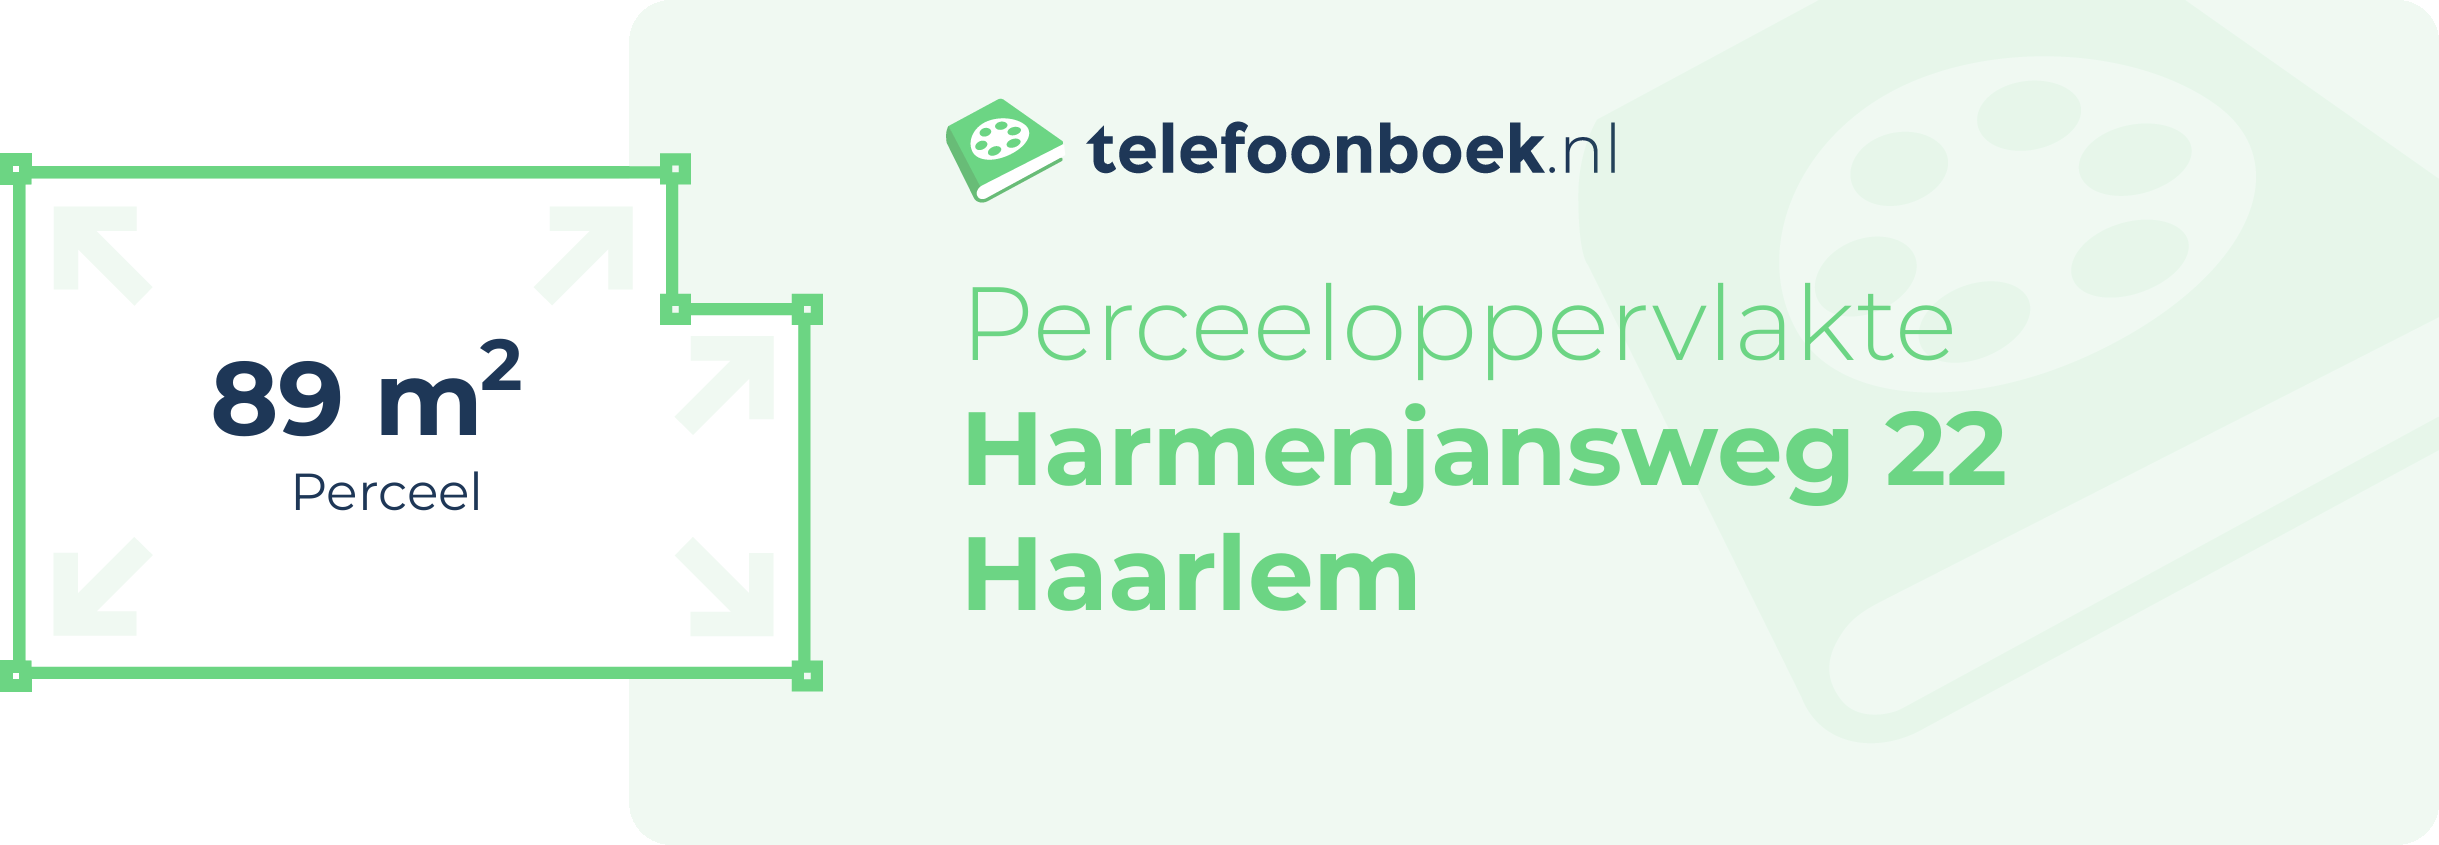 Perceeloppervlakte Harmenjansweg 22 Haarlem